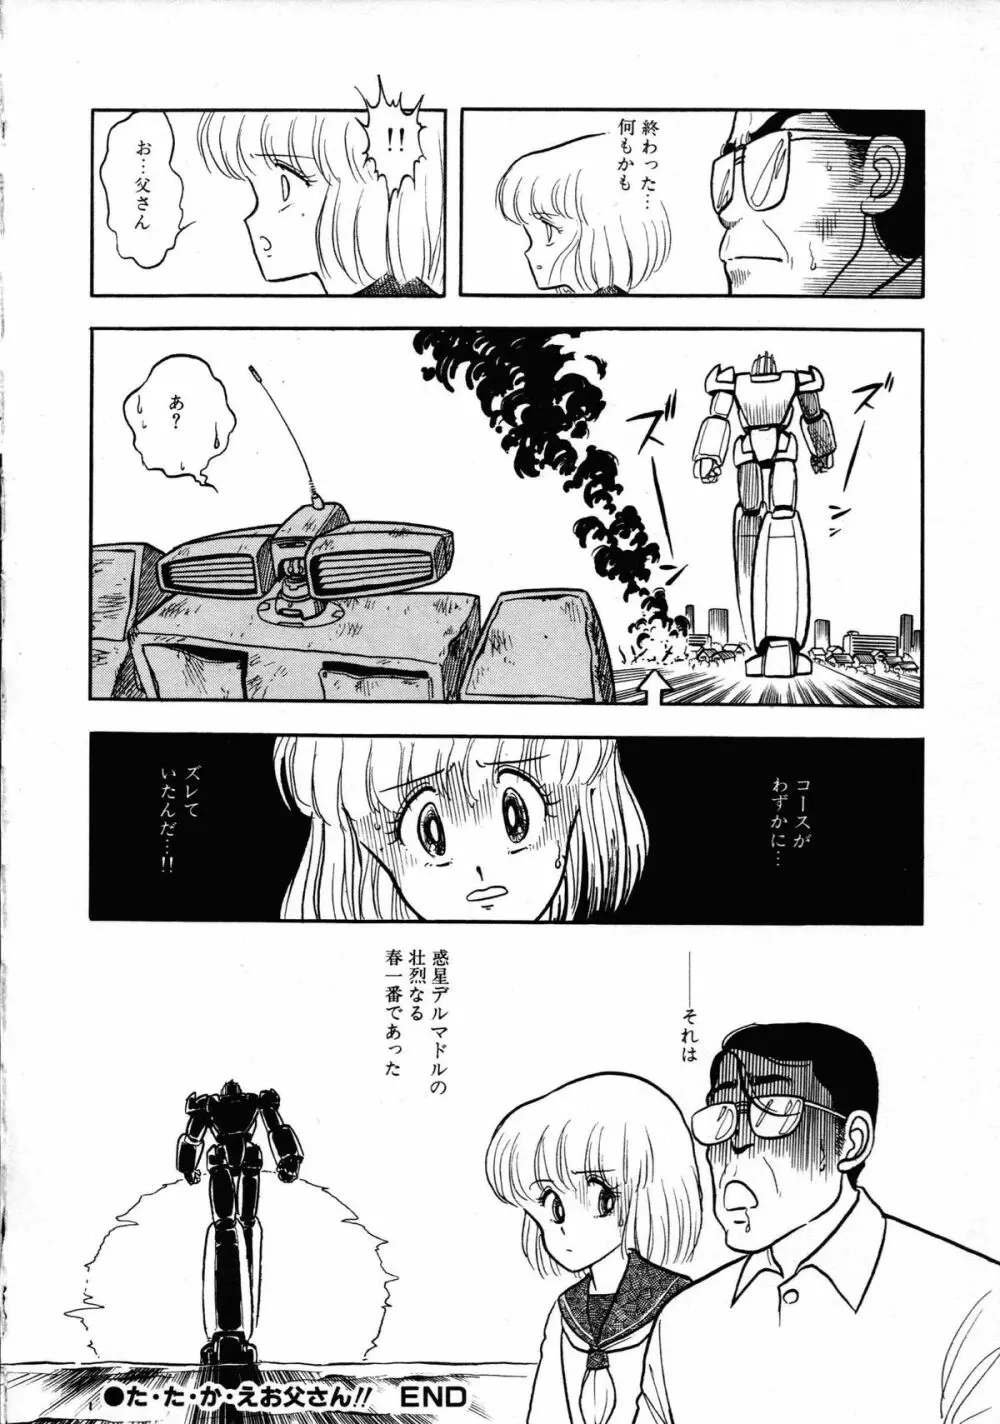 ロボット&美少女傑作選 レモン・ピープル1982-1986 90ページ